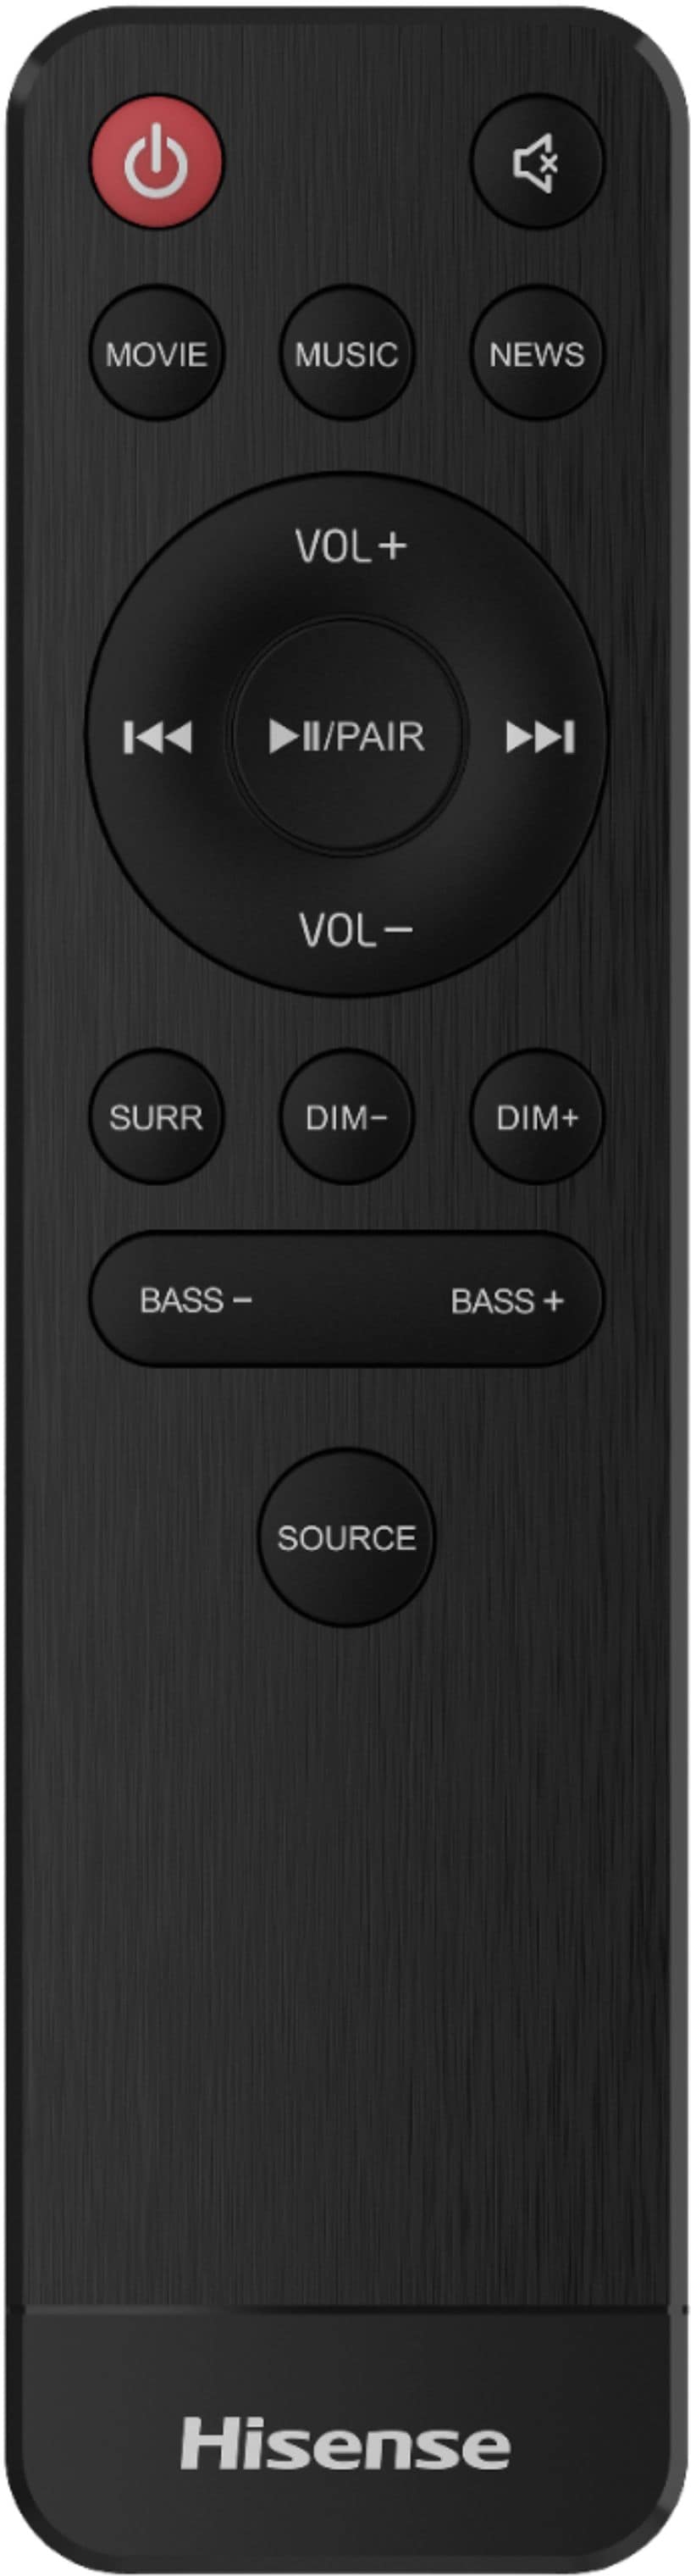 Hisense - 2.1-Channel Soundbar with Built-in Subwoofer - Black_5